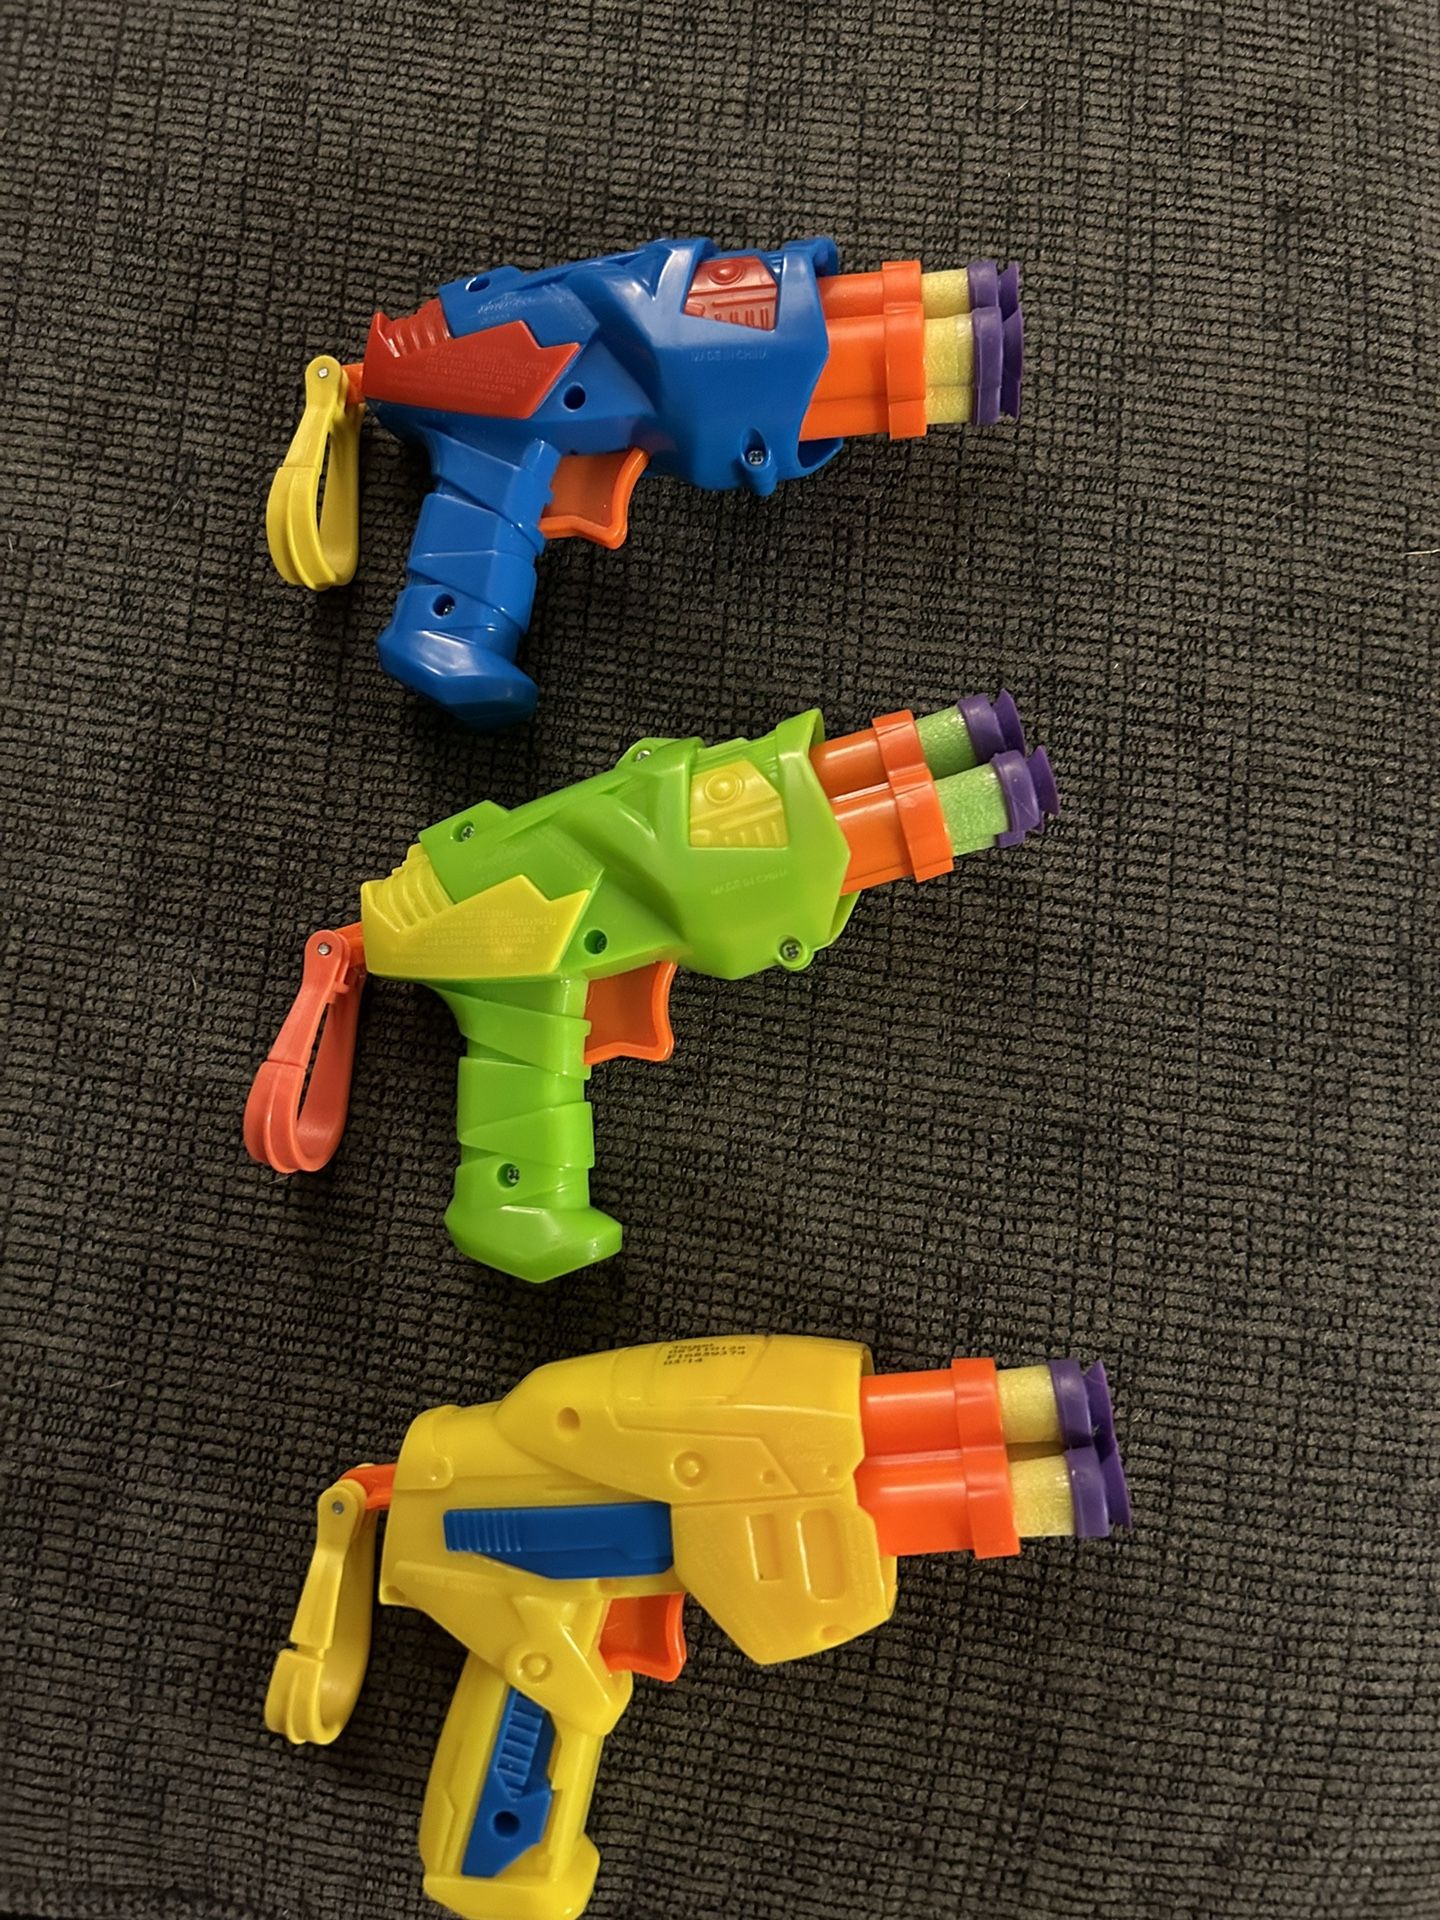 3 Mini Nerf Guns